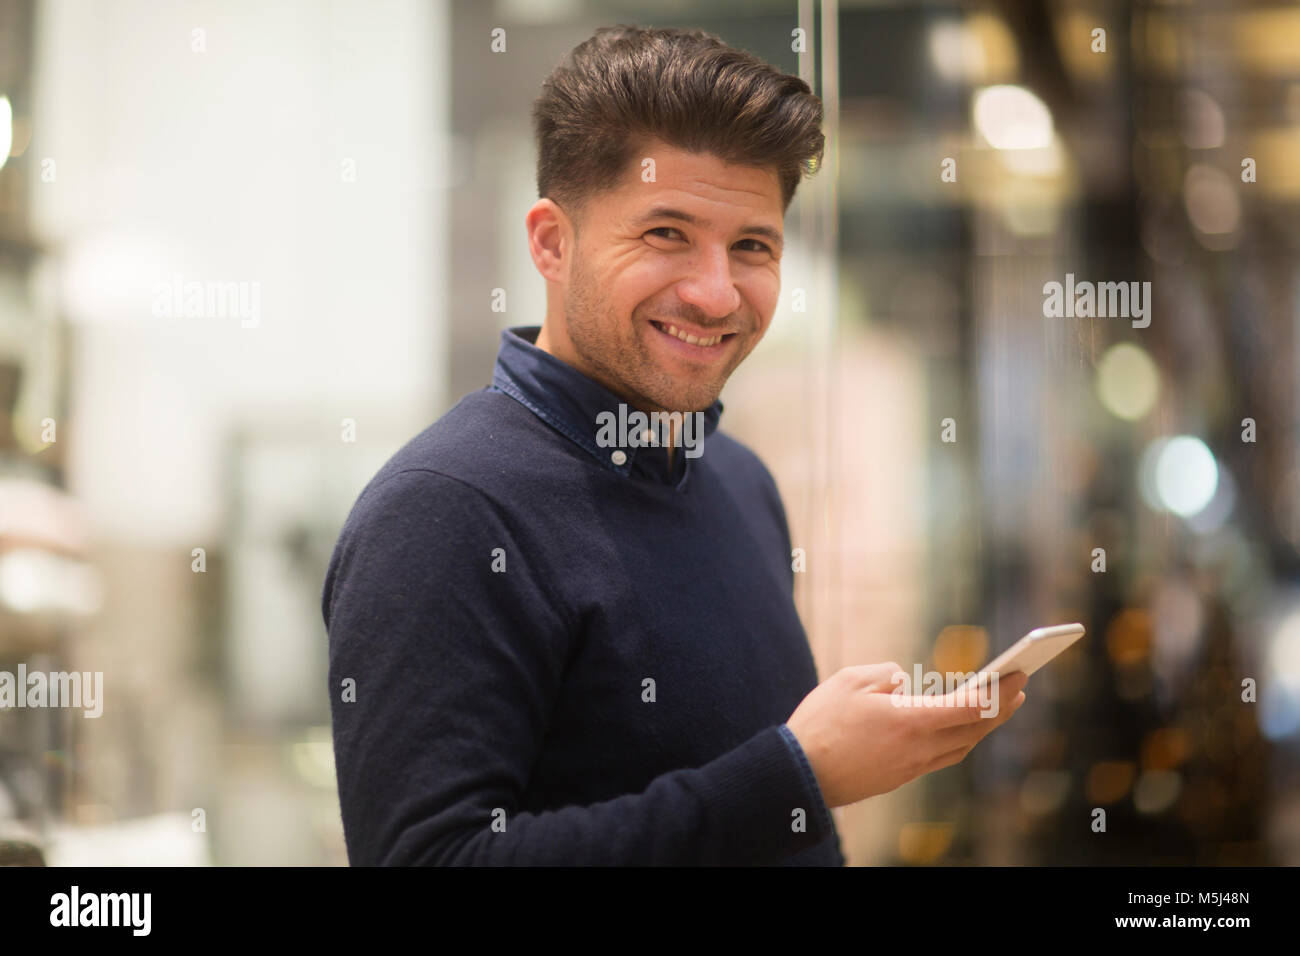 Portrait of laughing man avec téléphone cellulaire dans un centre commercial Banque D'Images